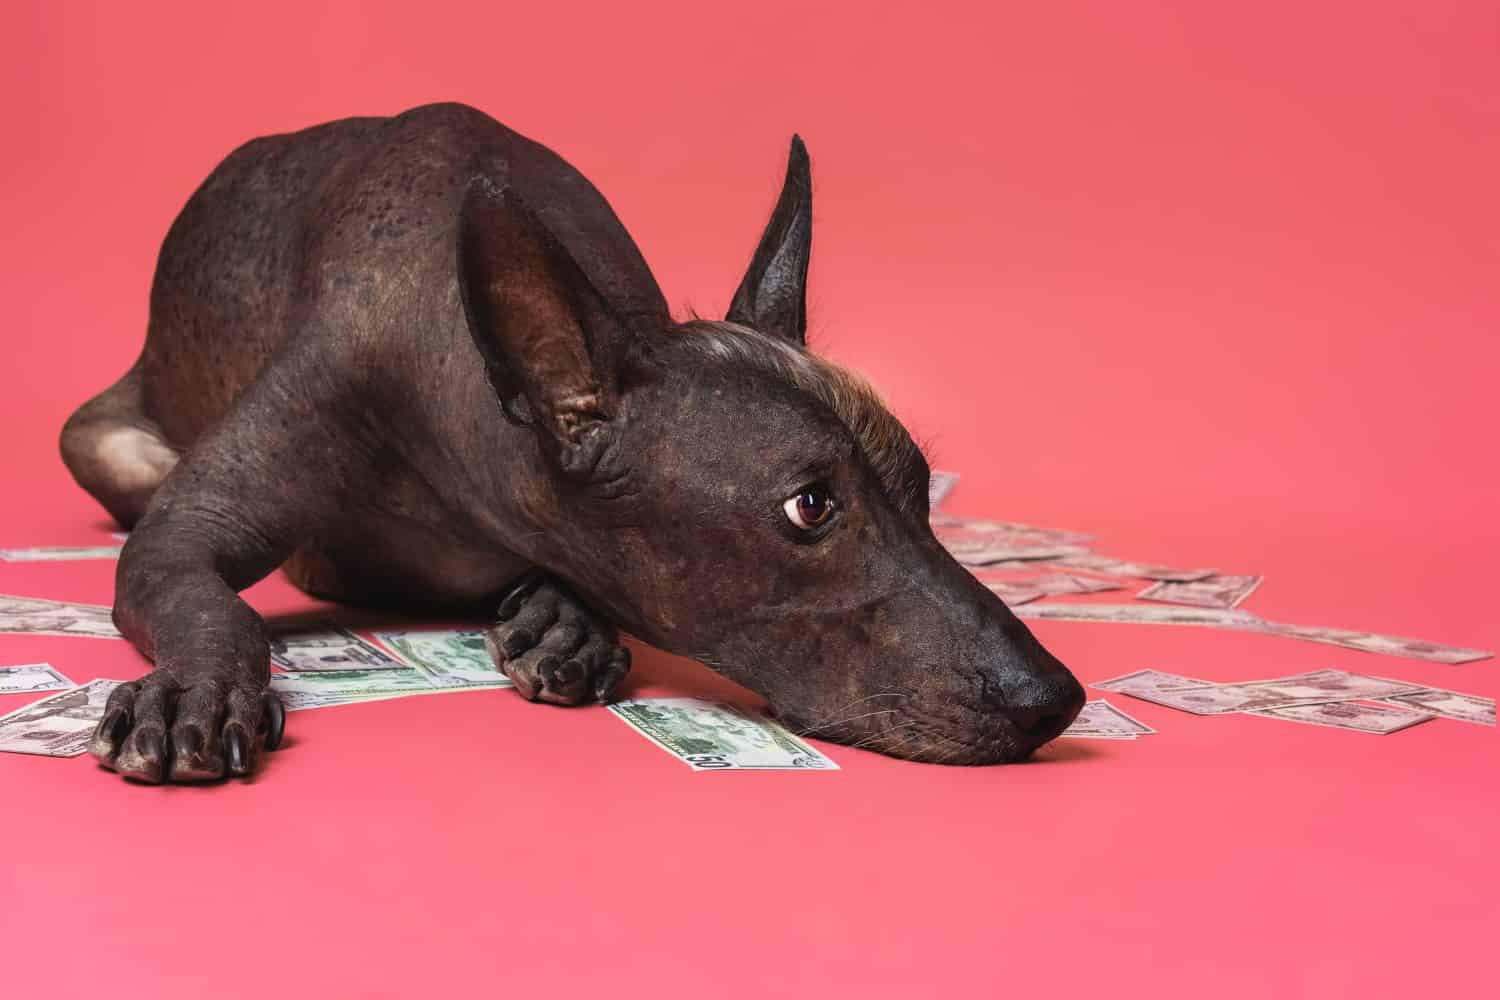 il ritratto ravvicinato di un cane di razza xoloitzcuintle giace su un mucchio di dollari americani su uno sfondo rosa.  Ricchezza